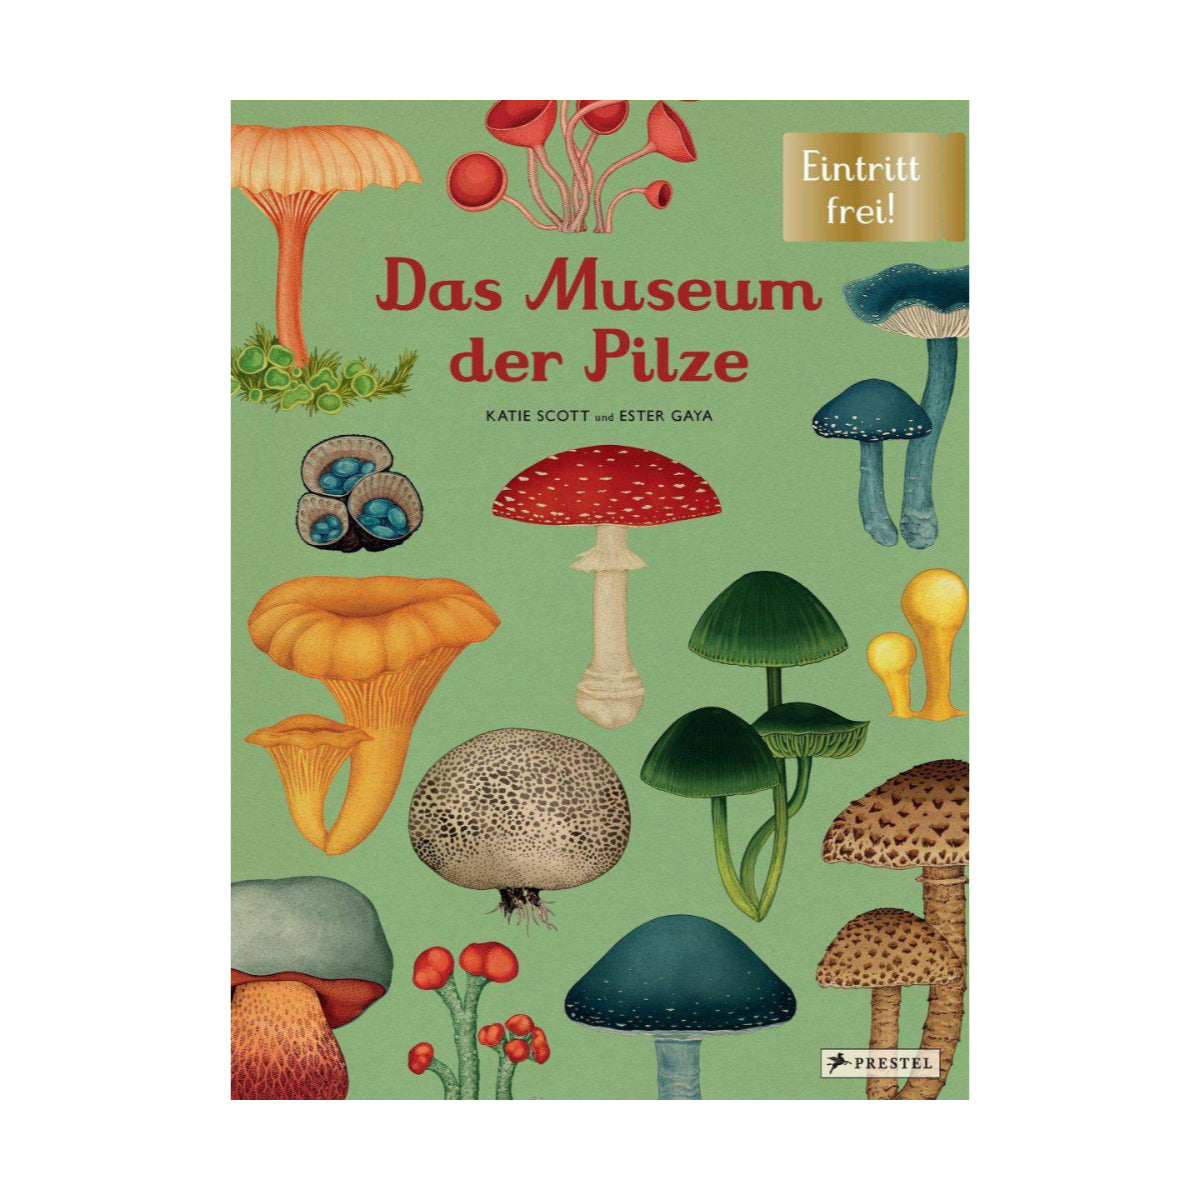 Prestel Verlag – Buch DAS MUSEUM DER PILZE von Katie Scott und Ester Gaya - WILDHOOD store